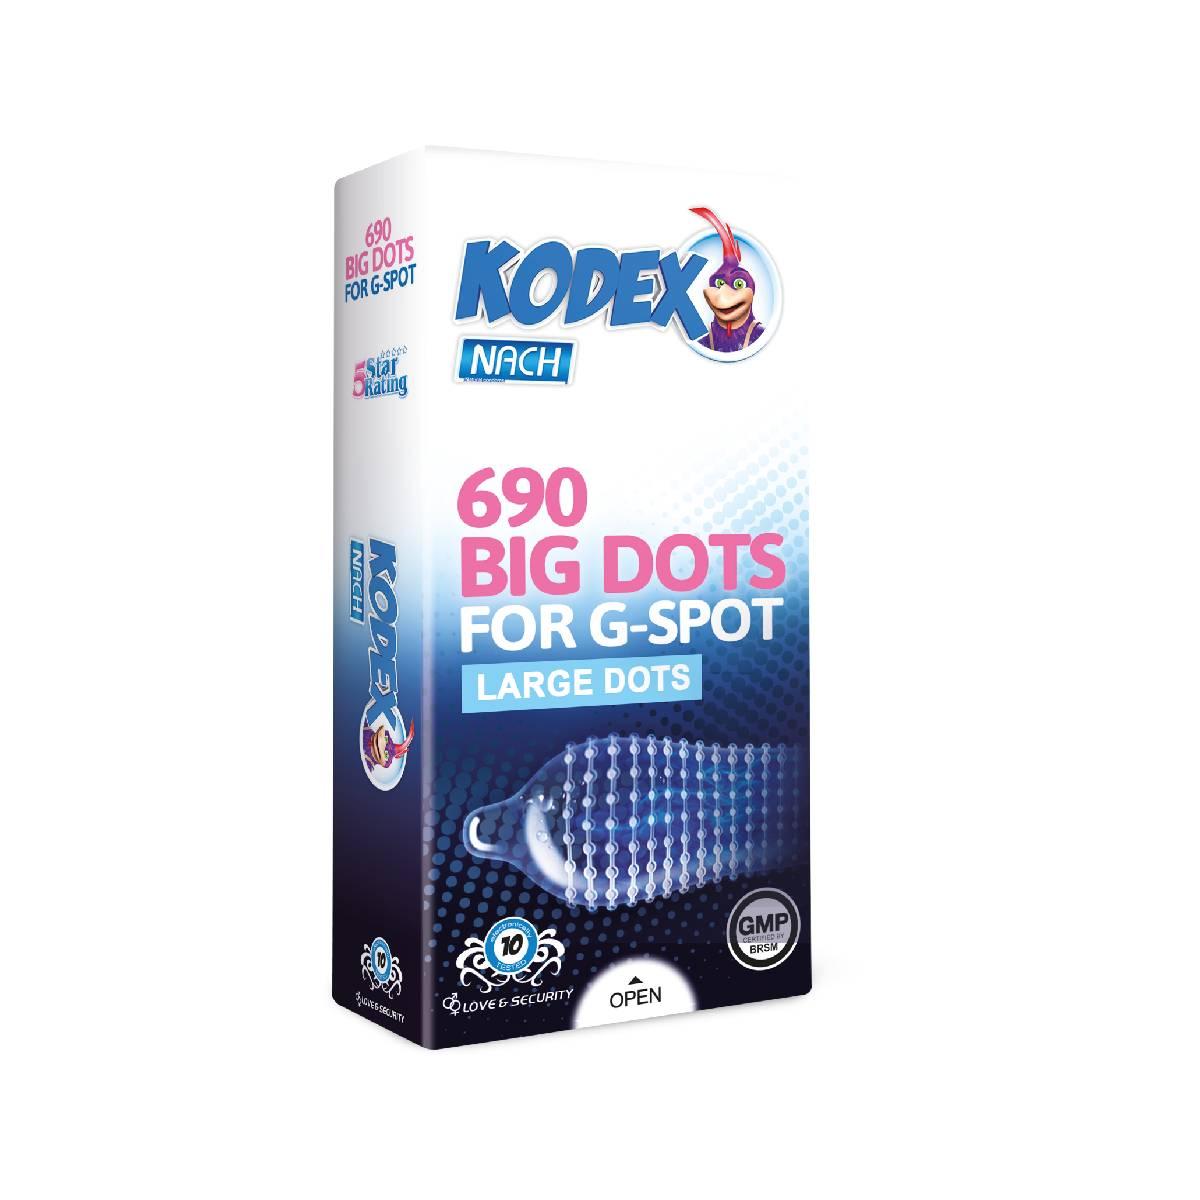 Kodex 690 Big Dots